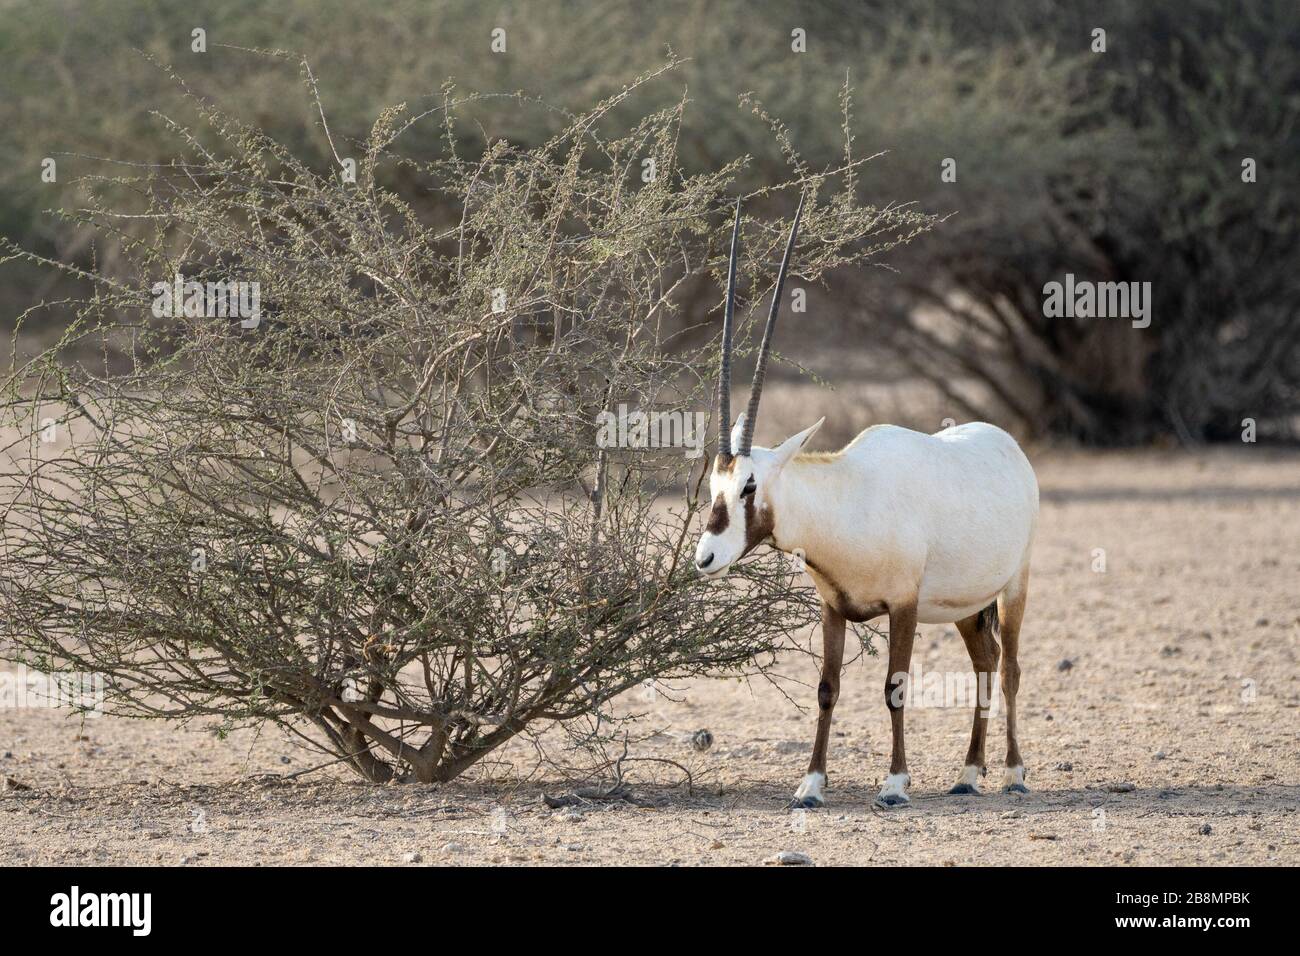 L'Oryx arabe d'Al Reem nature reseve au Qatar Banque D'Images